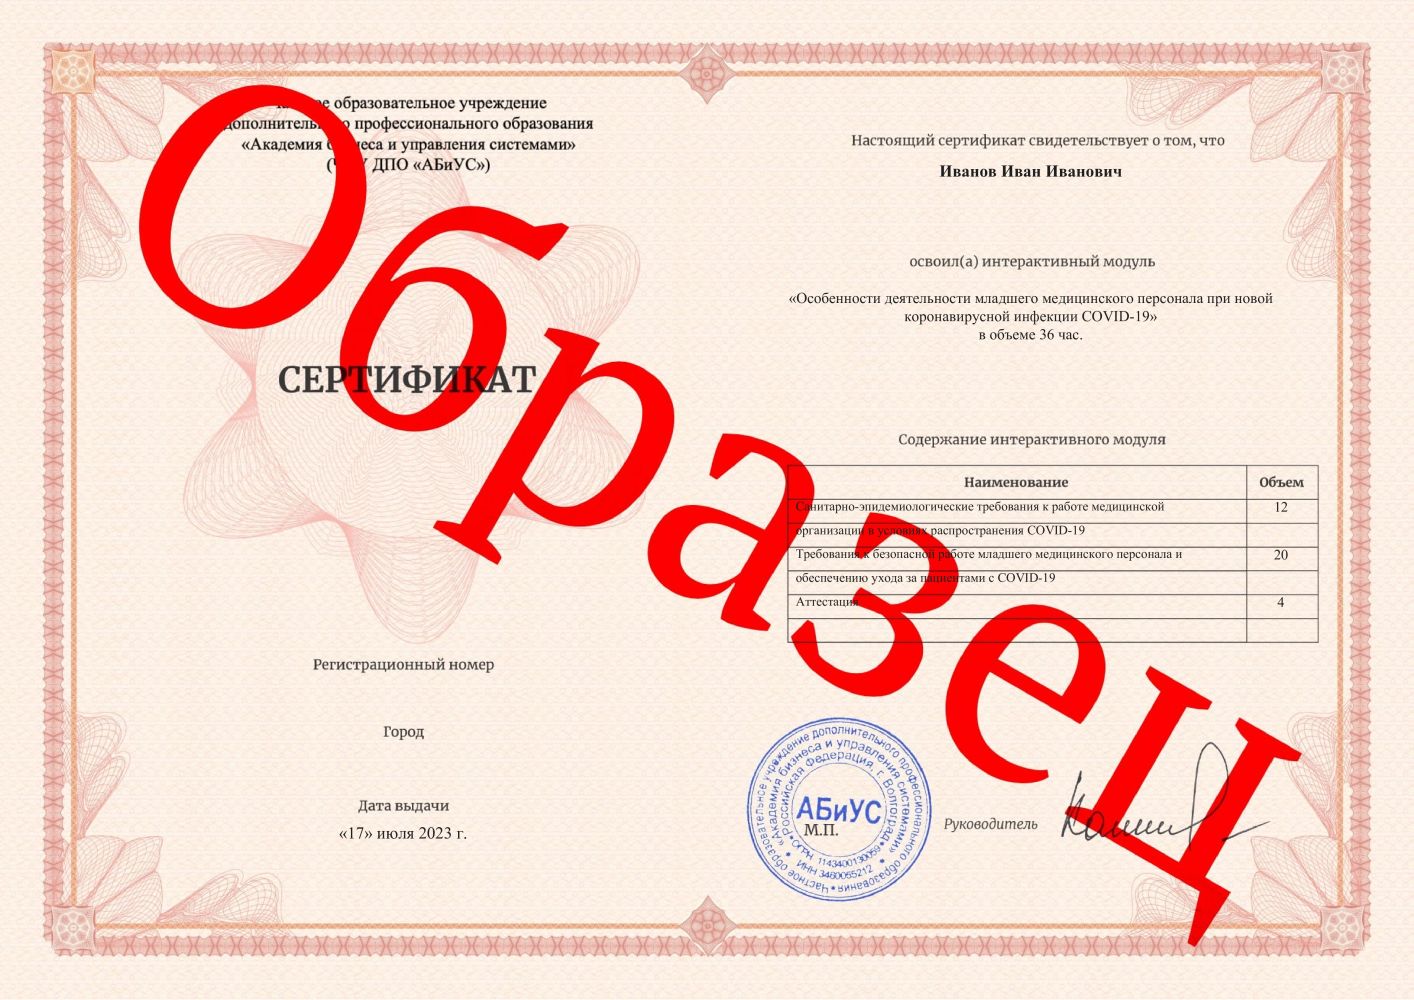 Сертификат Особенности деятельности младшего медицинского персонала при новой коронавирусной инфекции COVID-19 36 часов 1250 руб.